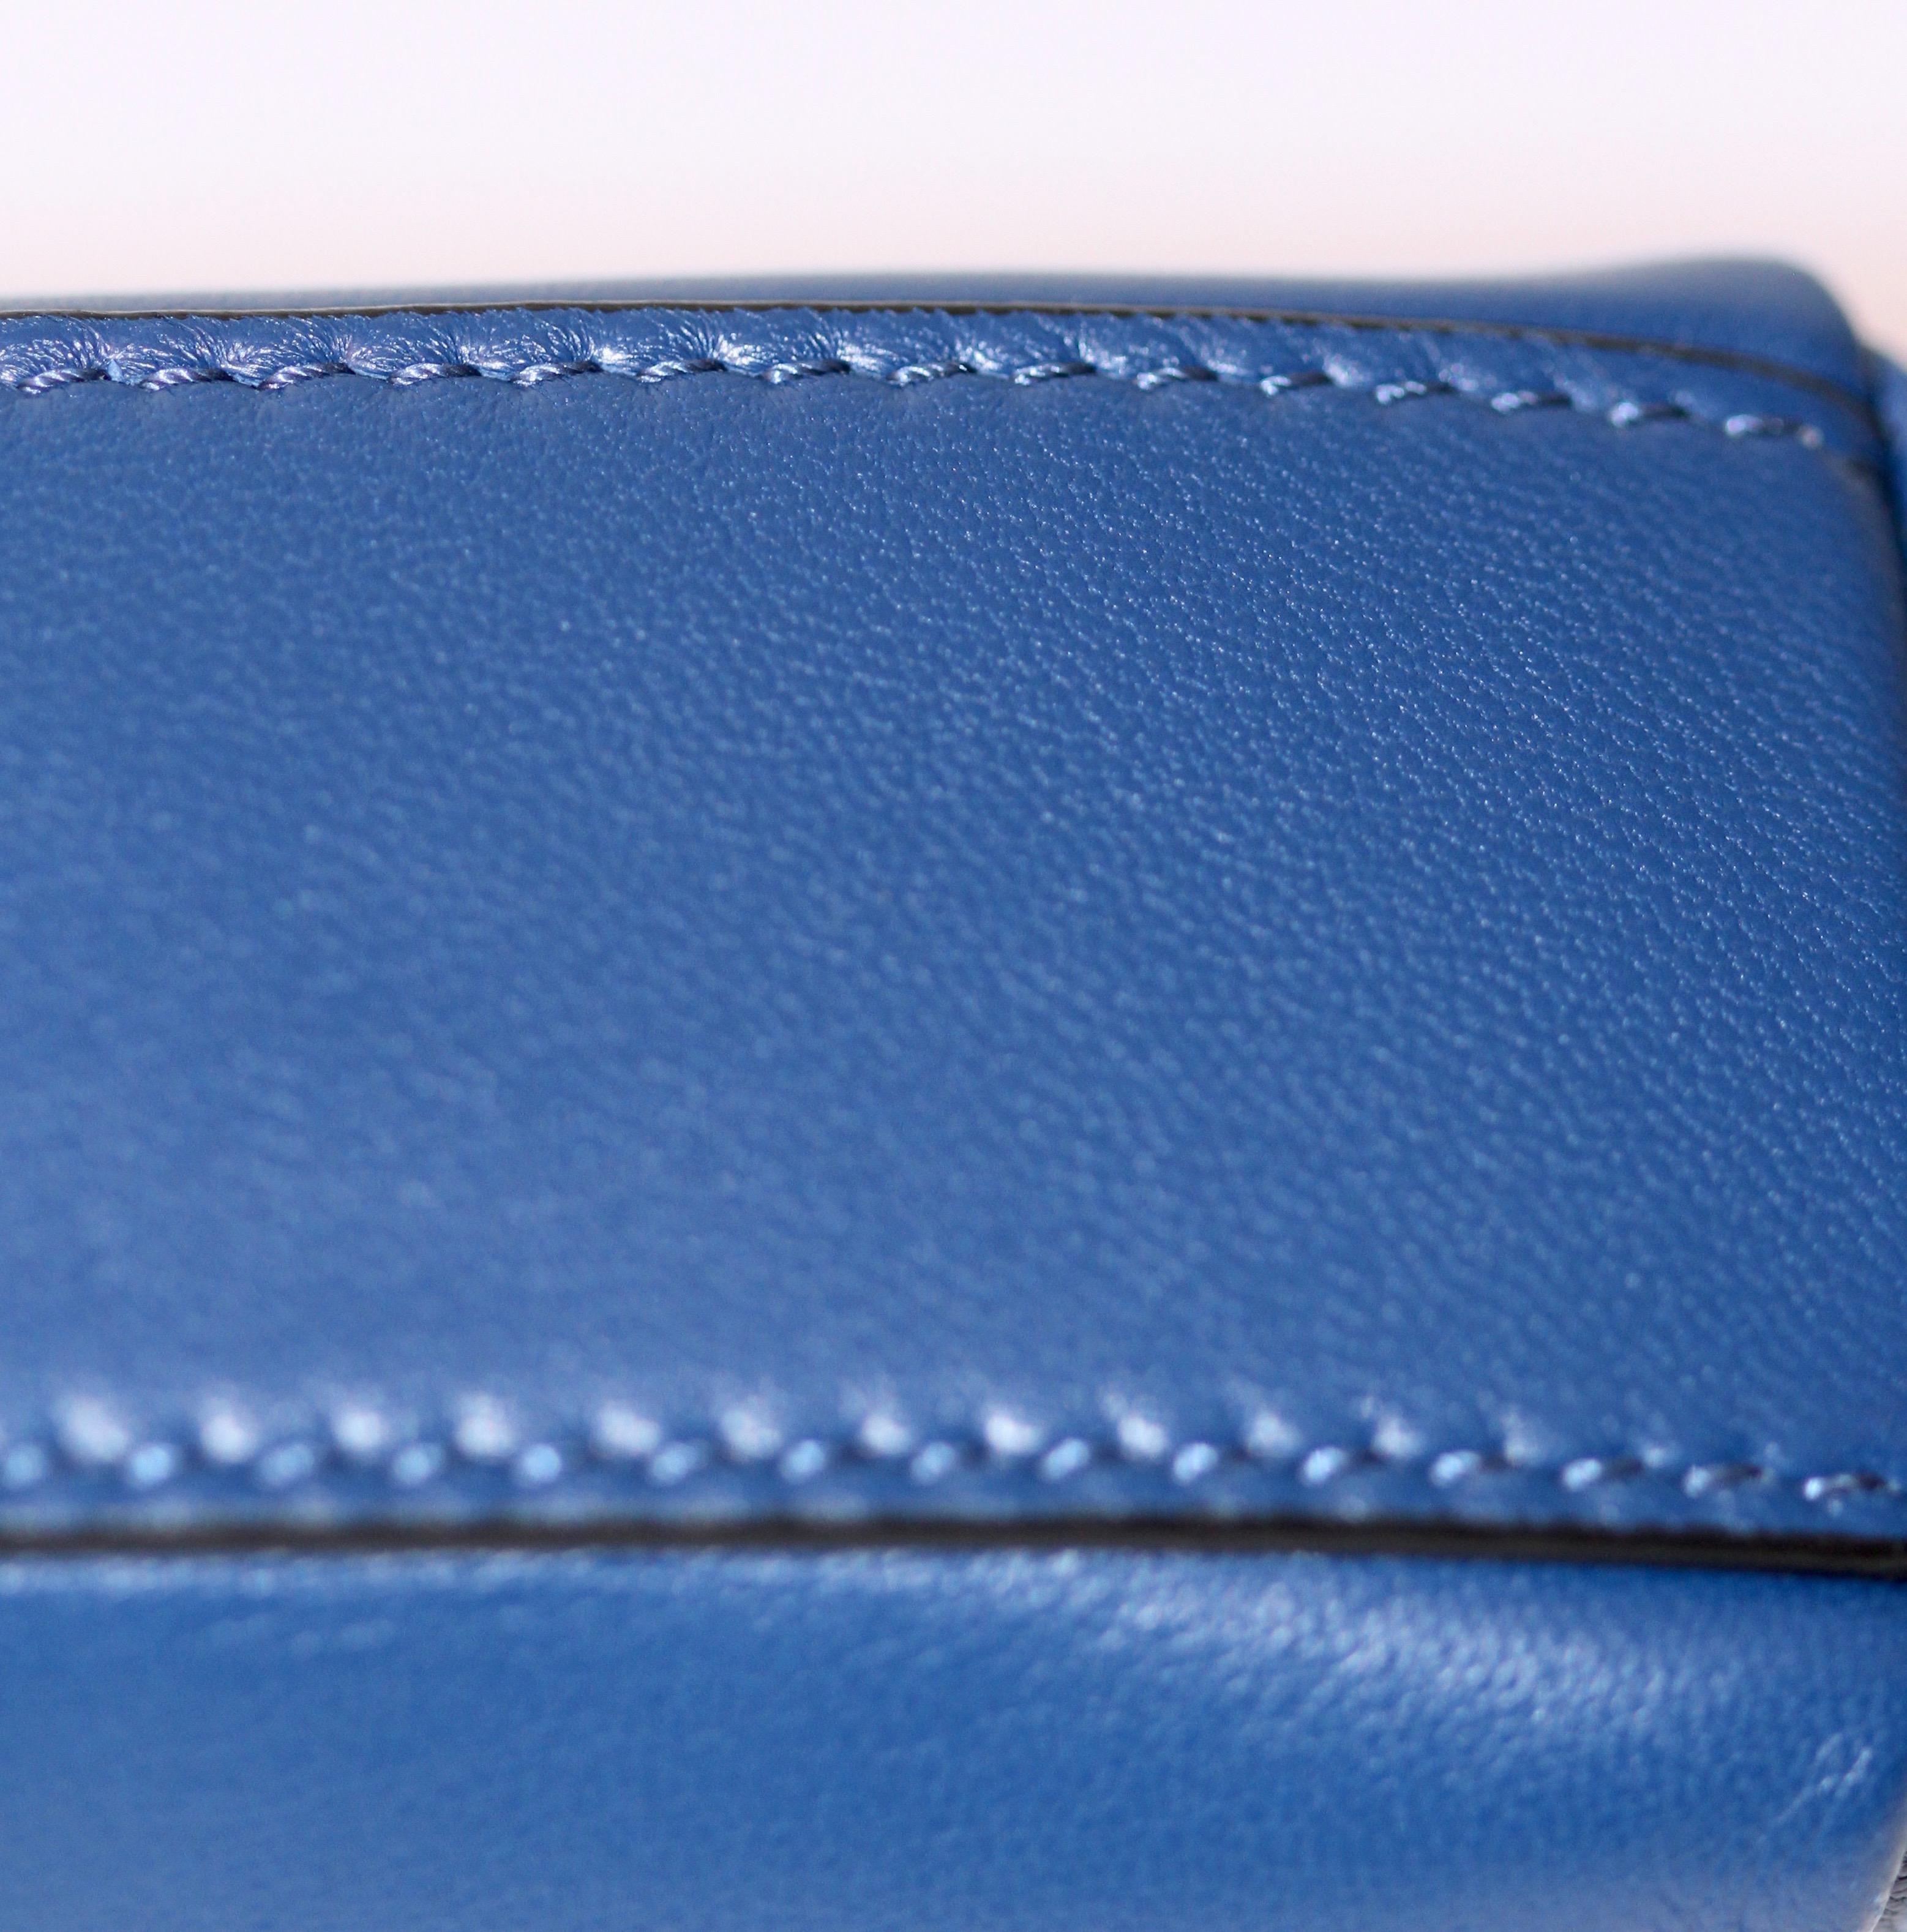 FENDI Micro Peekaboo Blue Nappa Leather 5